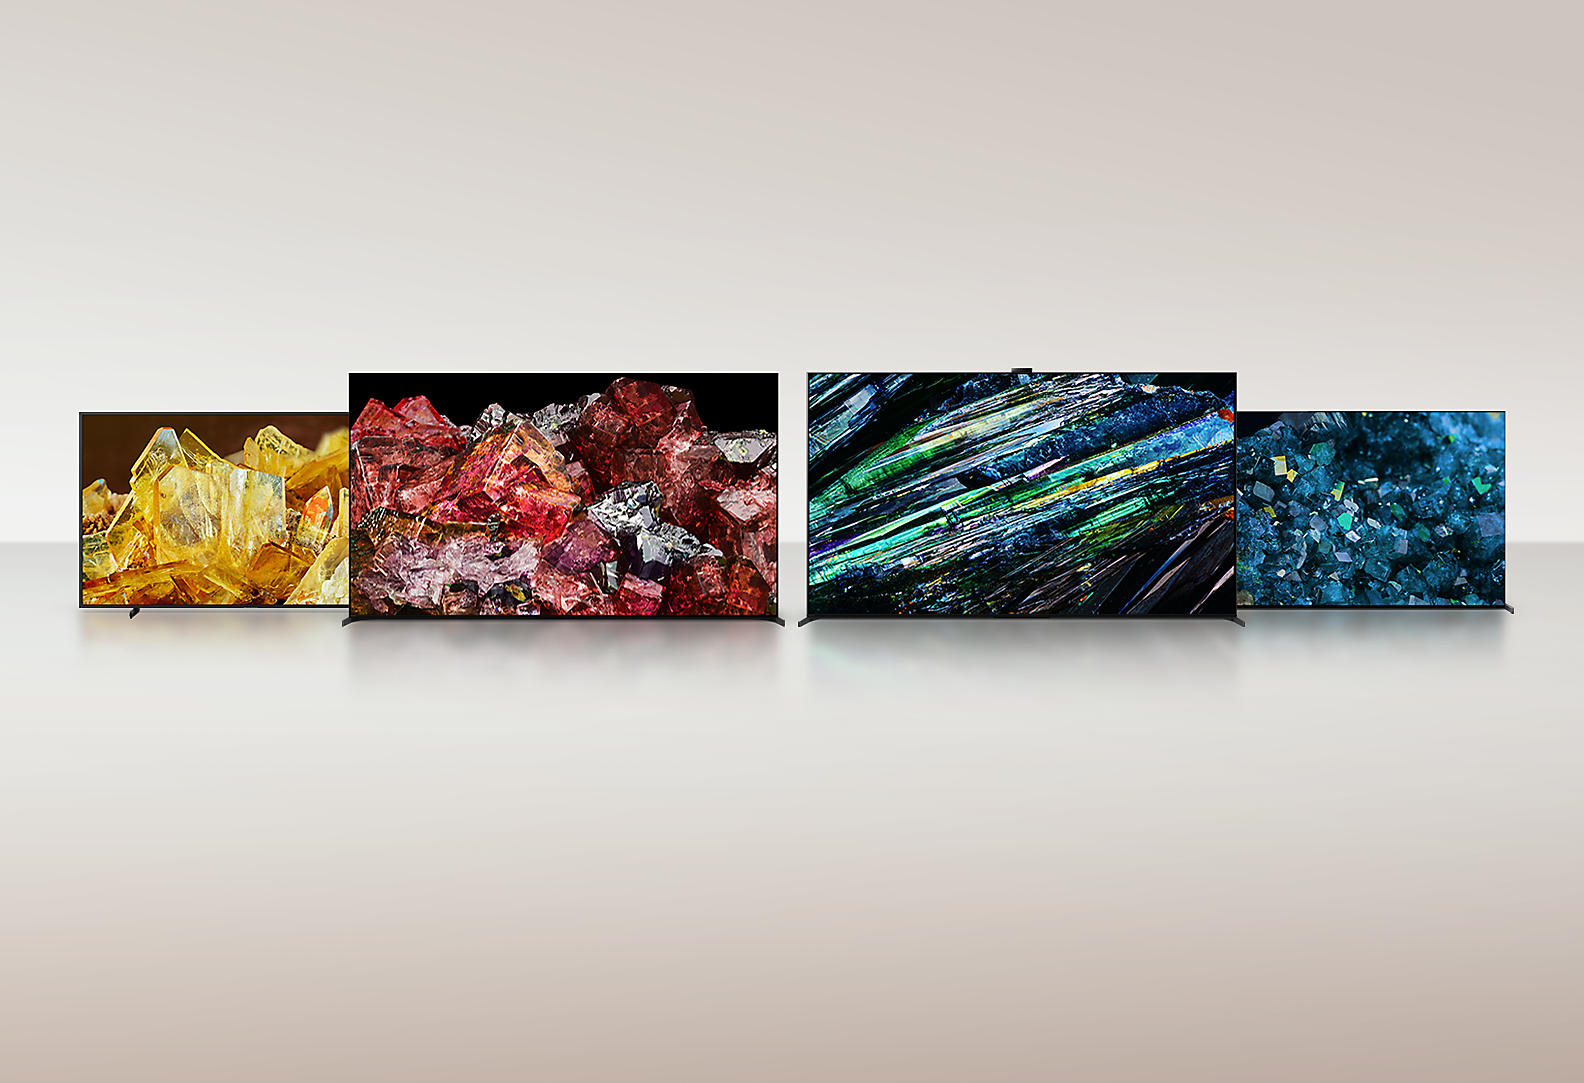 Štirje televizorji BRAVIA XR prikazujejo celozaslonske slike različnih vrst kristalov z neverjetnimi podrobnostmi in barvami